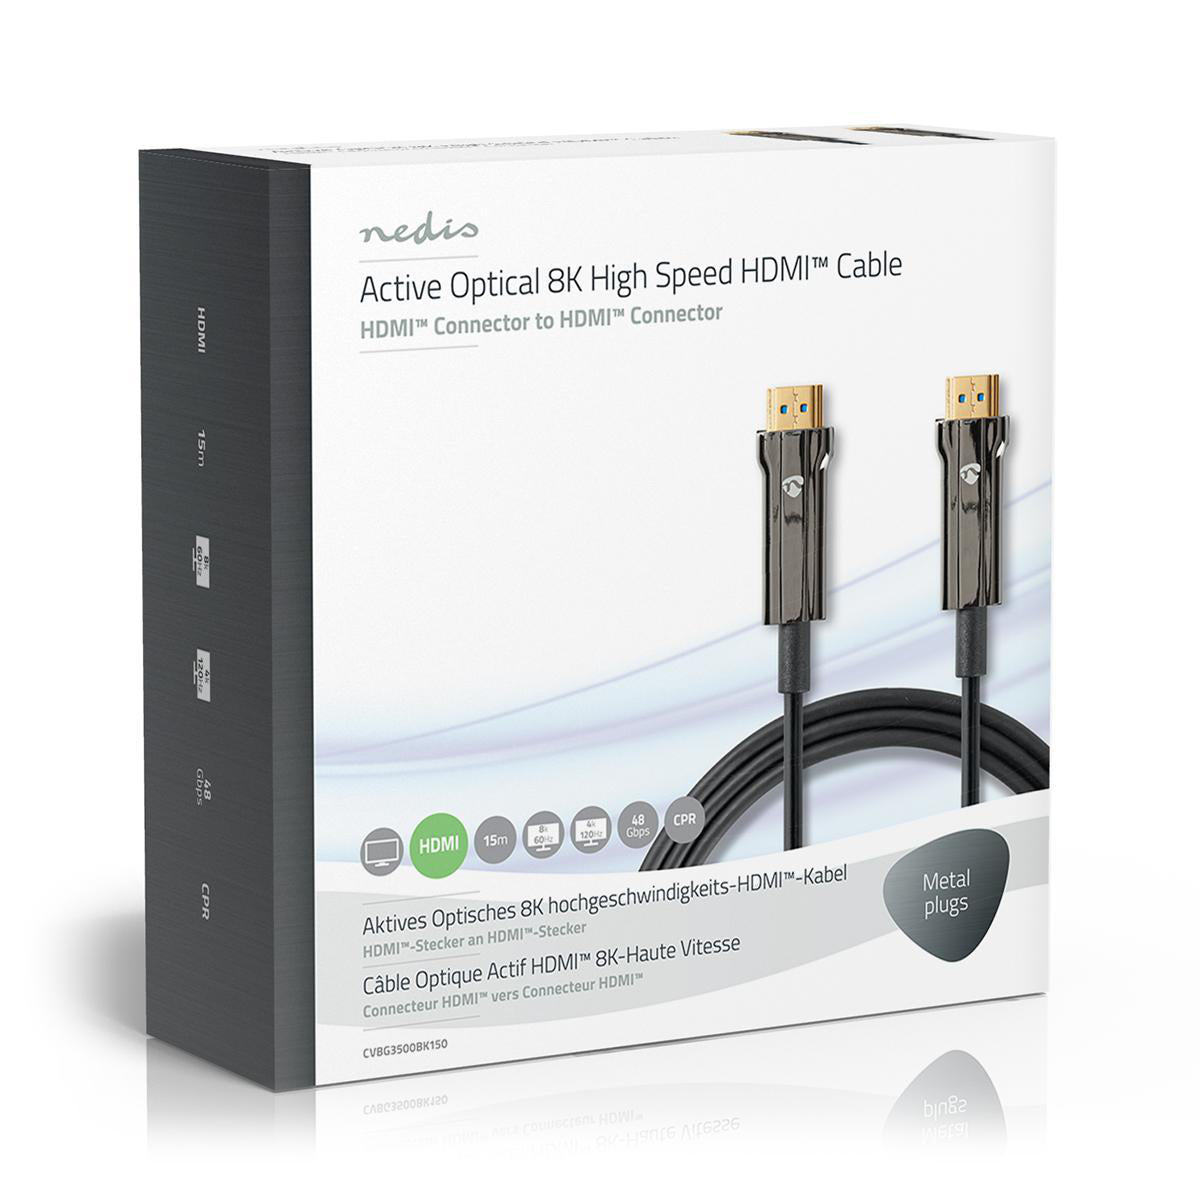 Aktive Optische Ultra High Speed HDMI-Kabel mit Ethernet | HDMI™ Stecker | HDMI™ Stecker | 8K@60Hz | 48 Gbps | 15.0 m | Rund | PVC | Schwarz | Kartonverpackung